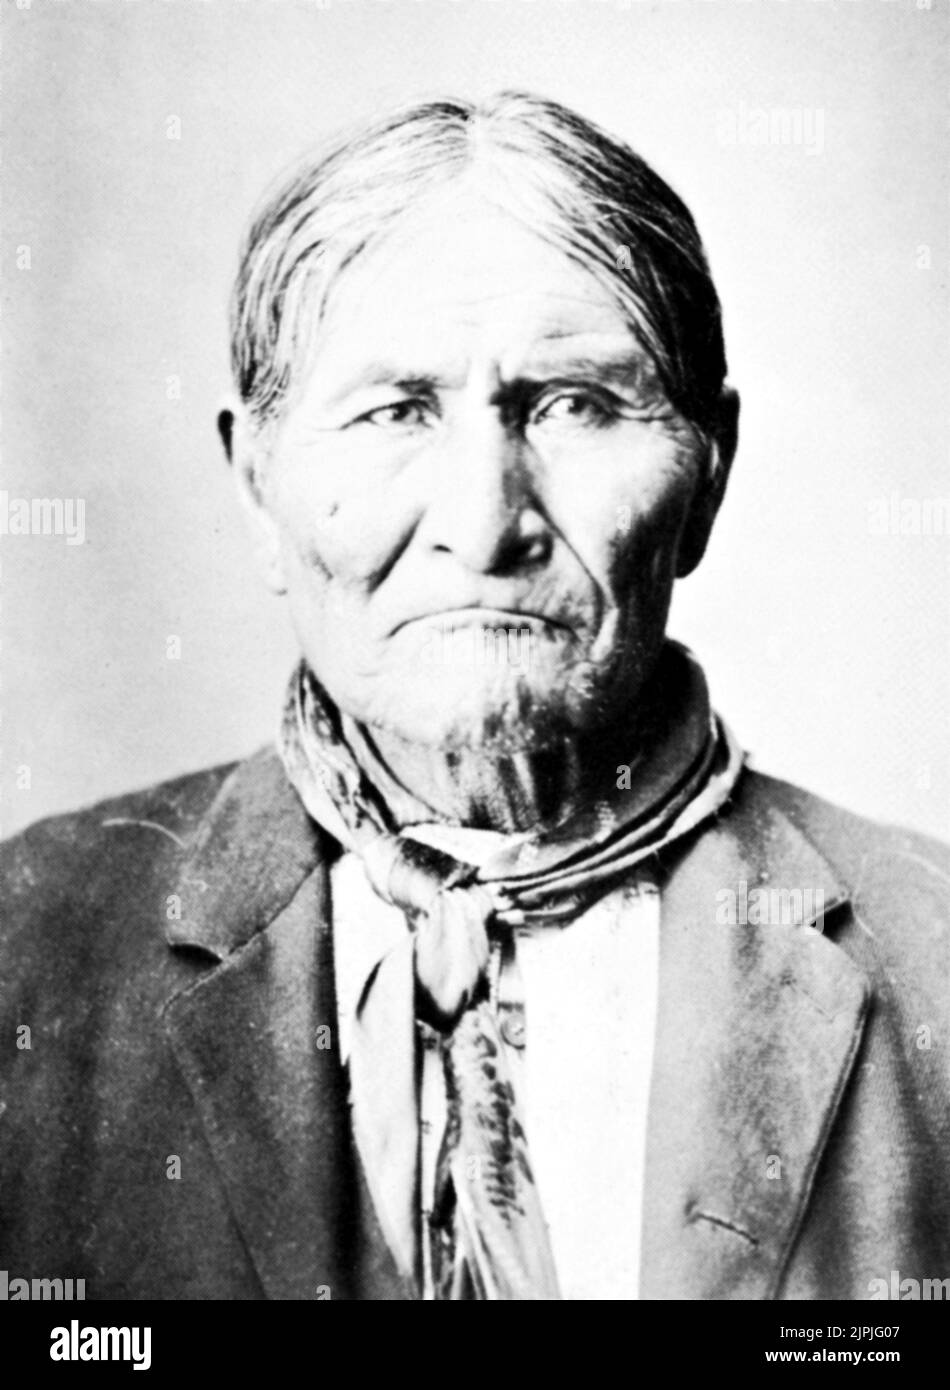 1900 aprox. : EL CHEF GERONIMO ( GOYATHLAY , 1829 - 1909 ), famoso líder de la guerra apache Chiricahua . Después de numerosos escapes y evasiones , Geronimo fue finalmente capturado en 1886. Murió de neumonía en 1909 después de más de 20 años de internamiento , principalmente en Fort Sill en Oklahoma - VECCHIO SELVAGGIO OESTE - Viejo SALVAJE - INDIANO PELLEROSSA - indiand nativos americanos - retrato - ritratto - foulard - bandanna --- Archivio GBB Foto de stock